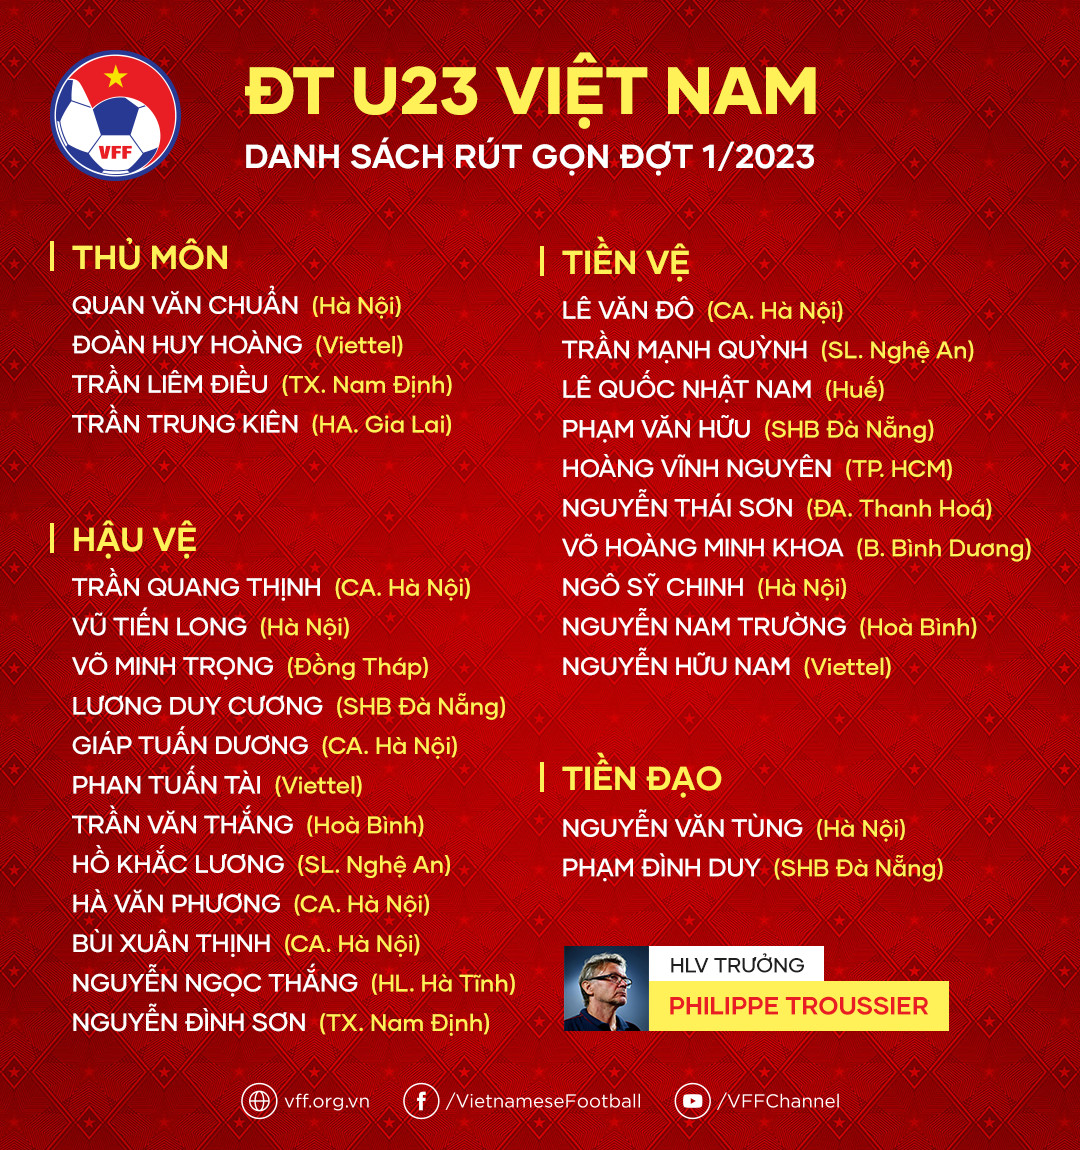 HLV Philippe Troussier rút gọn danh sách U23 Việt Nam - Ảnh 2.